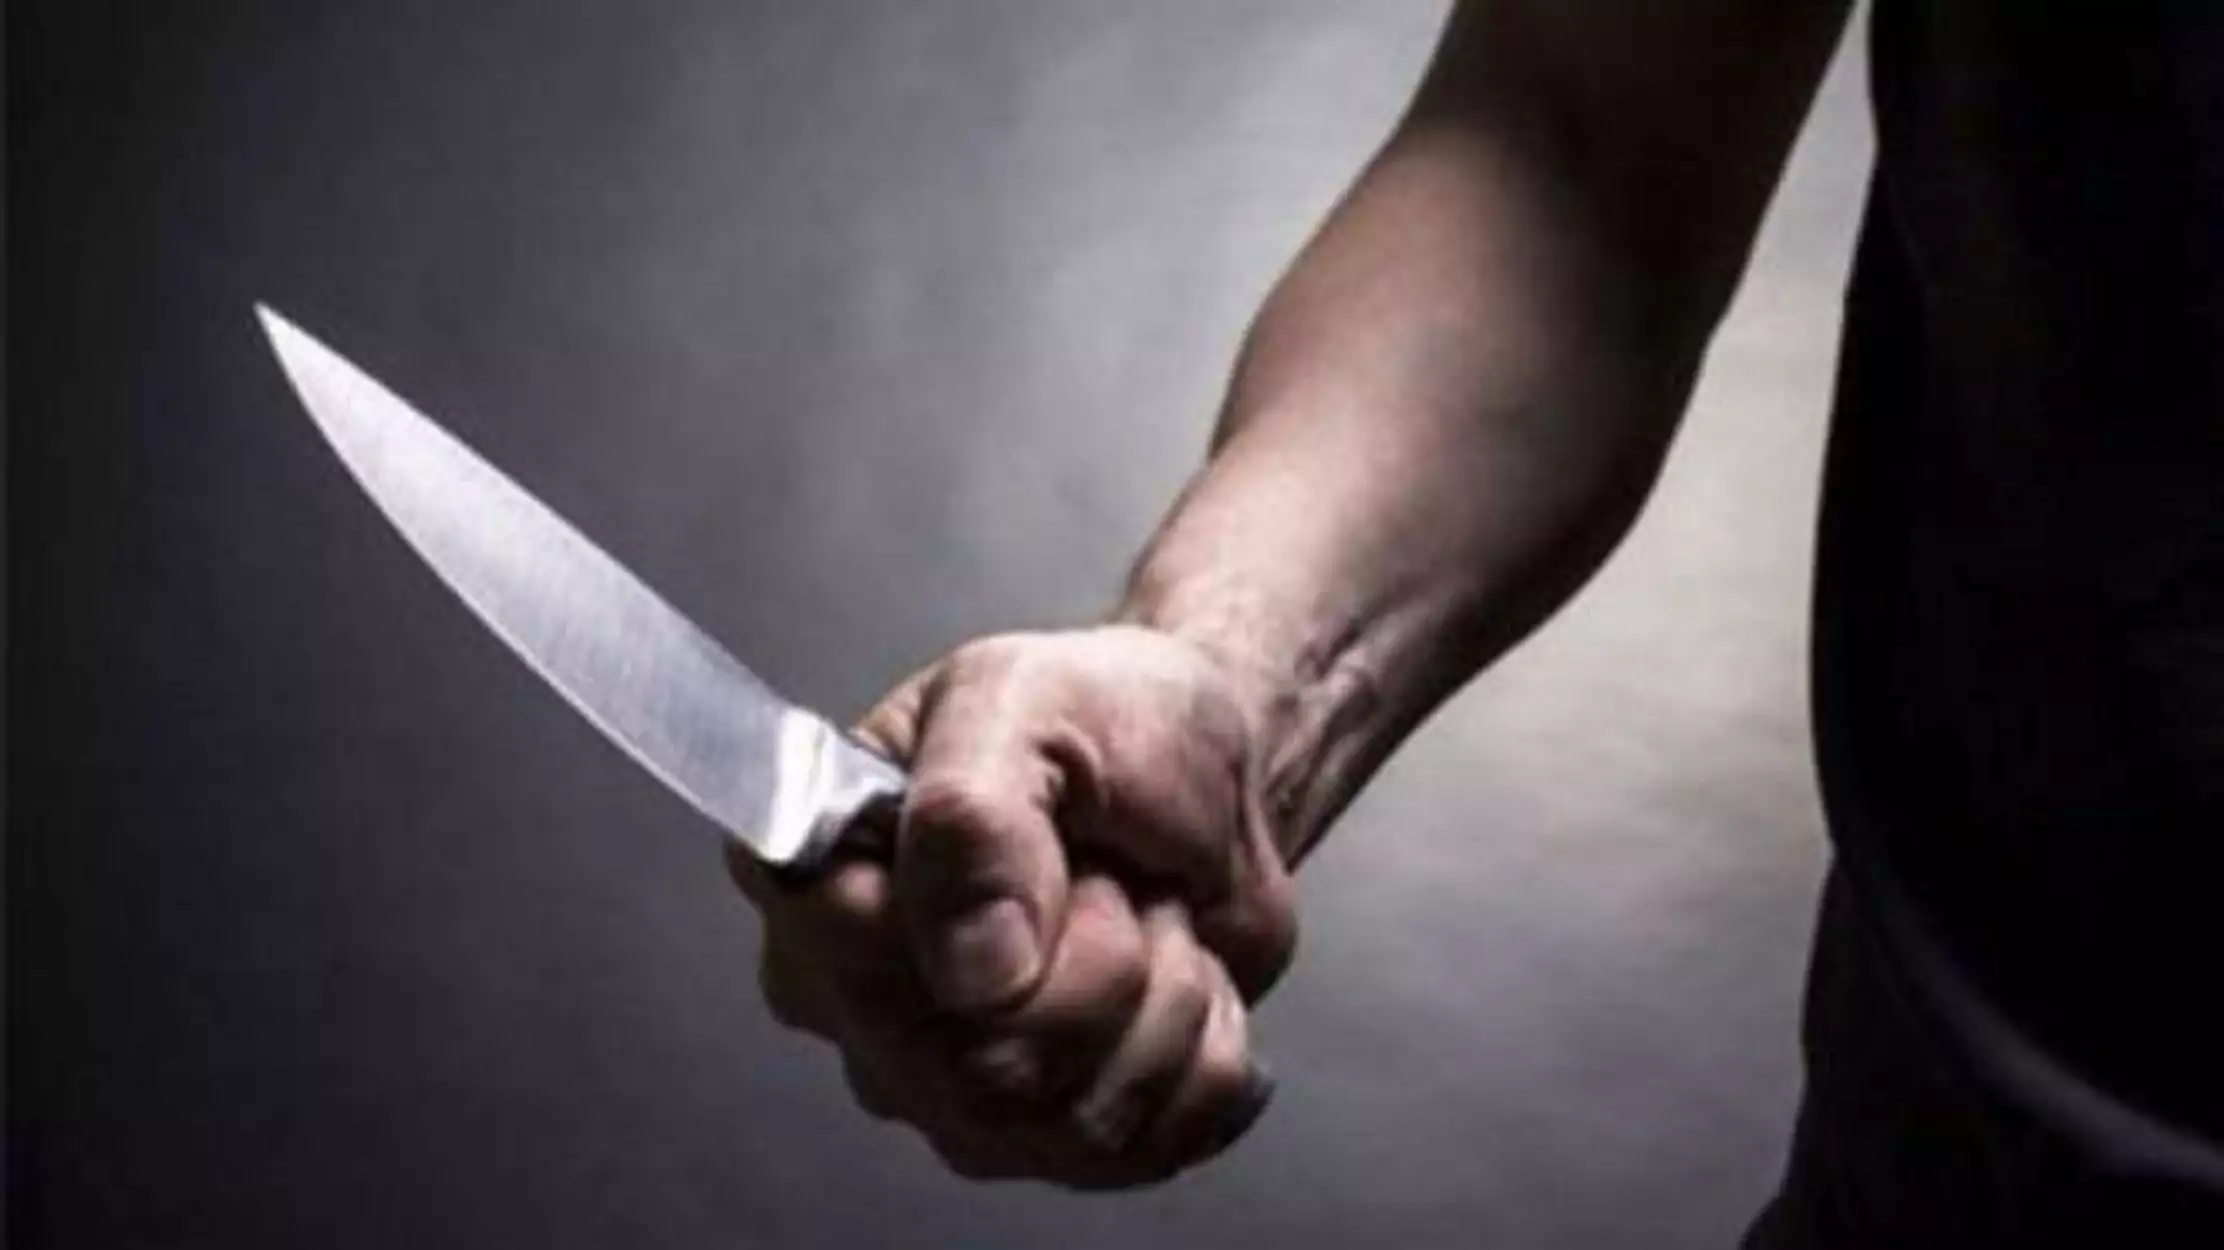 40χρονος μαχαίρωσε 45χρονο ομοεθνή του για οικονομικές διαφορές στα Λεύκτρα Βοιωτίας